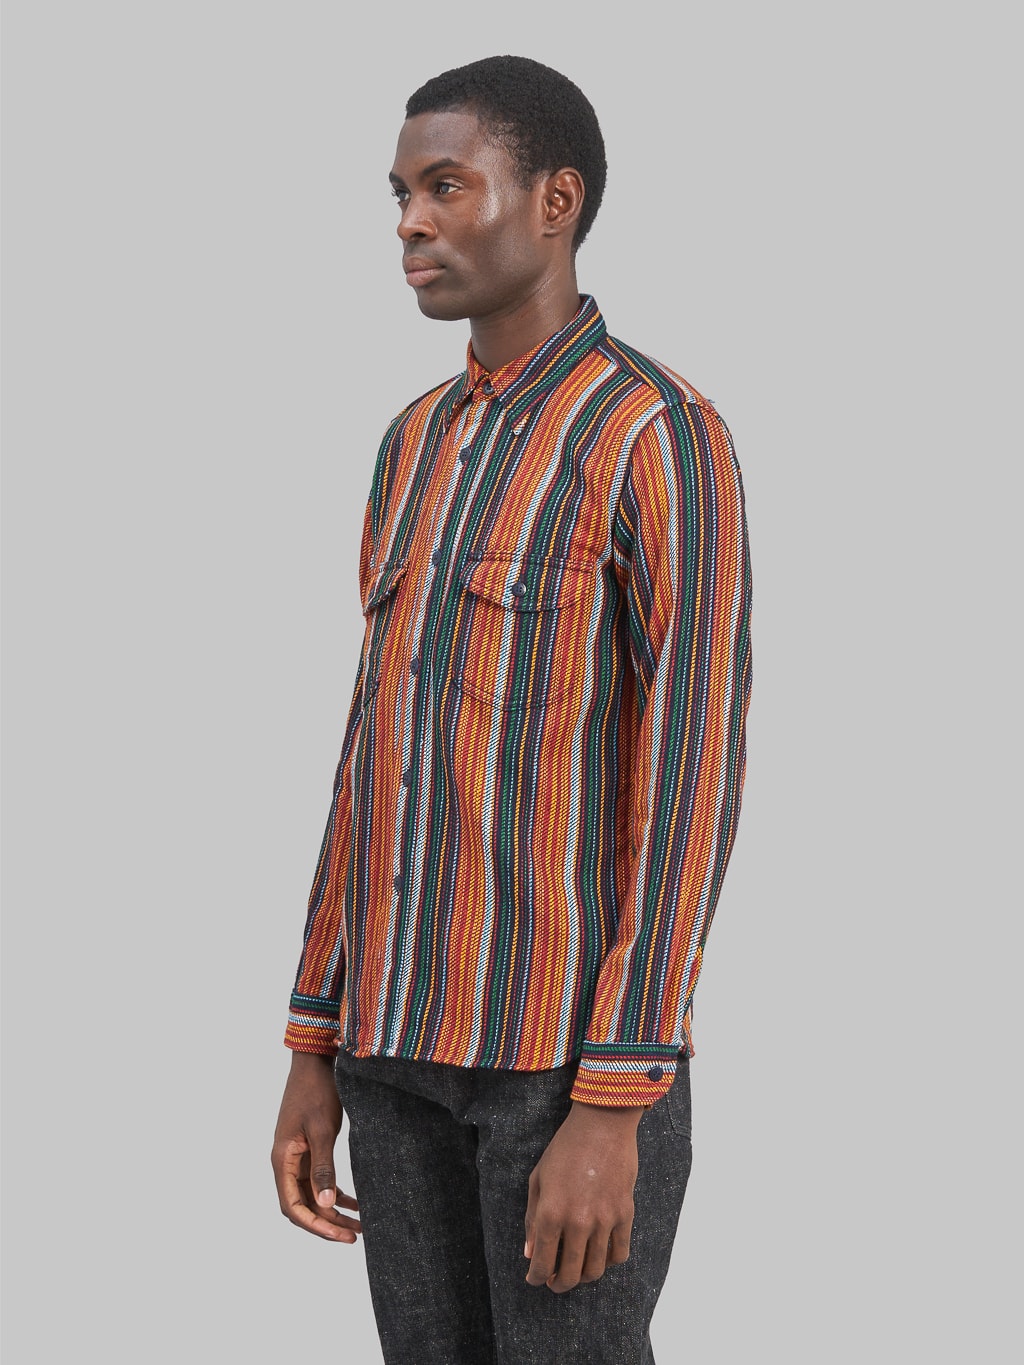 Samurai Jeans SIN23-02W Rope Dyed Indigo Orange Striped Heavy Flannel Work Shirt